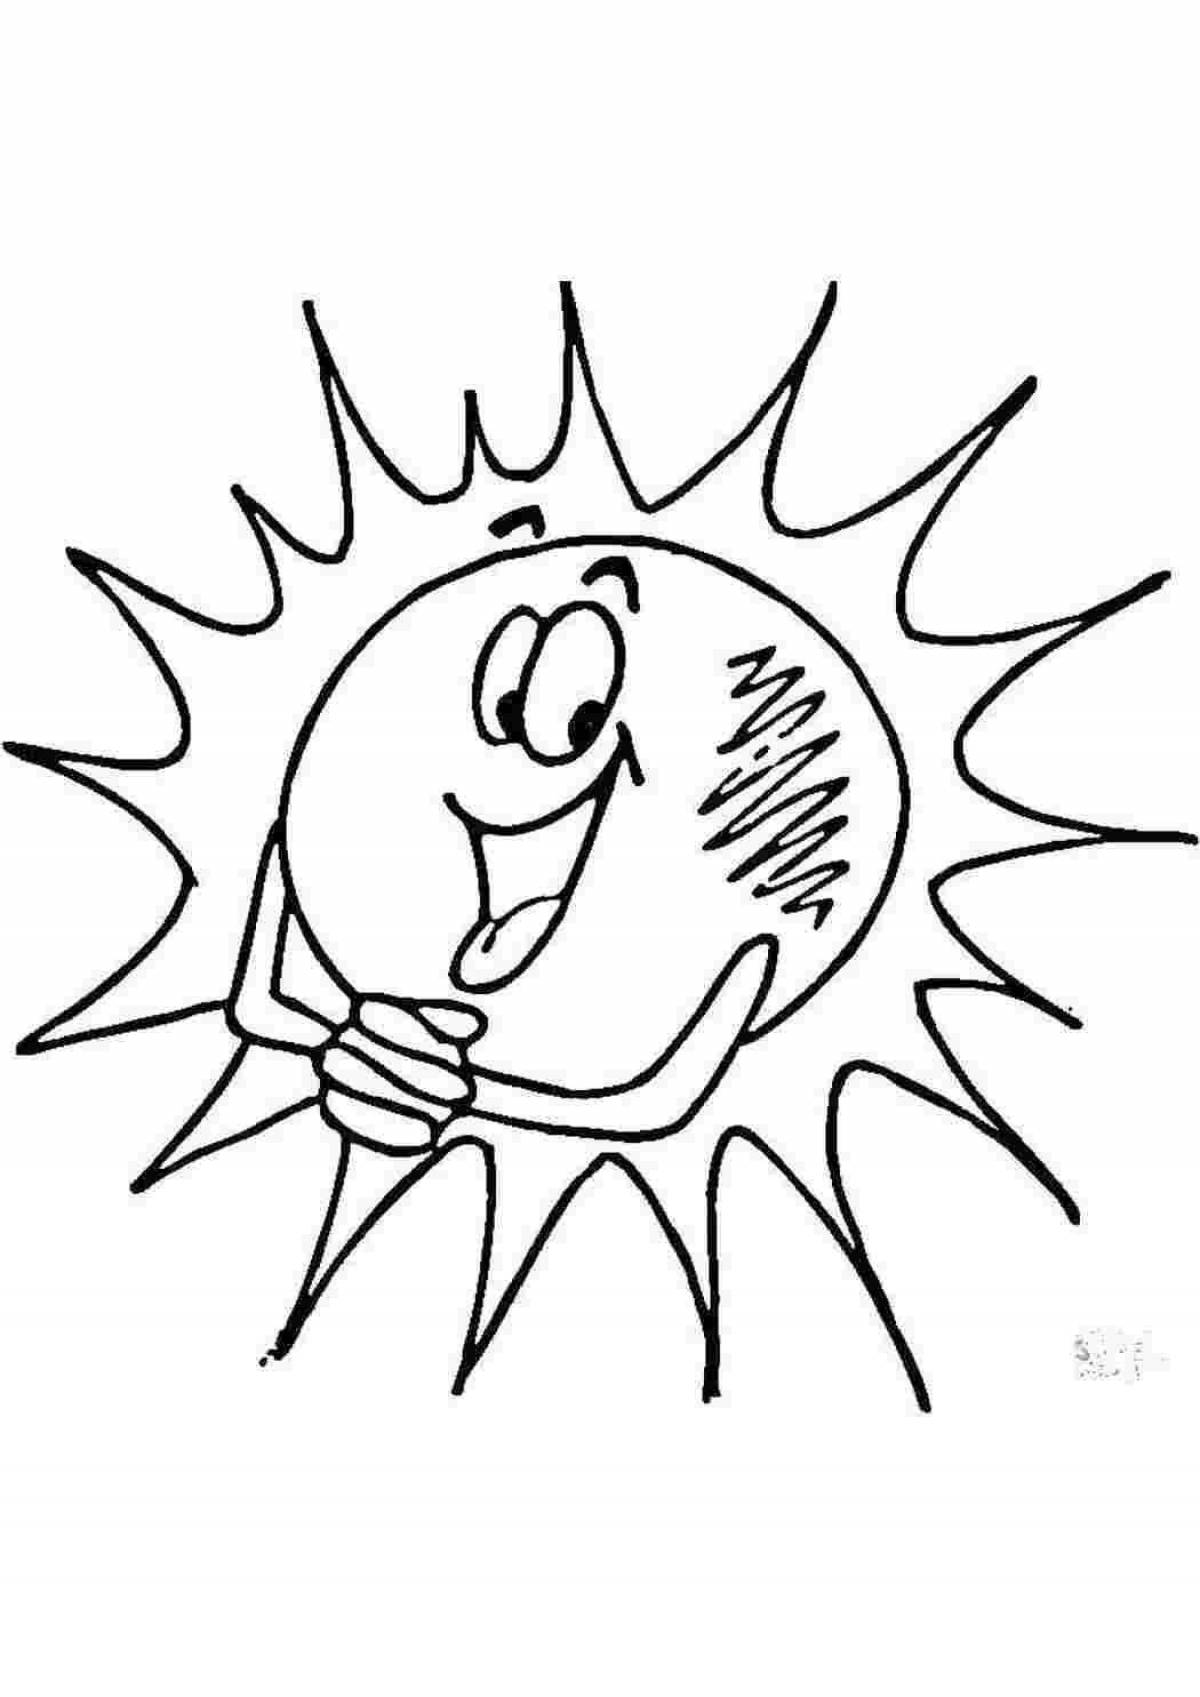 Joyful sun coloring for kids